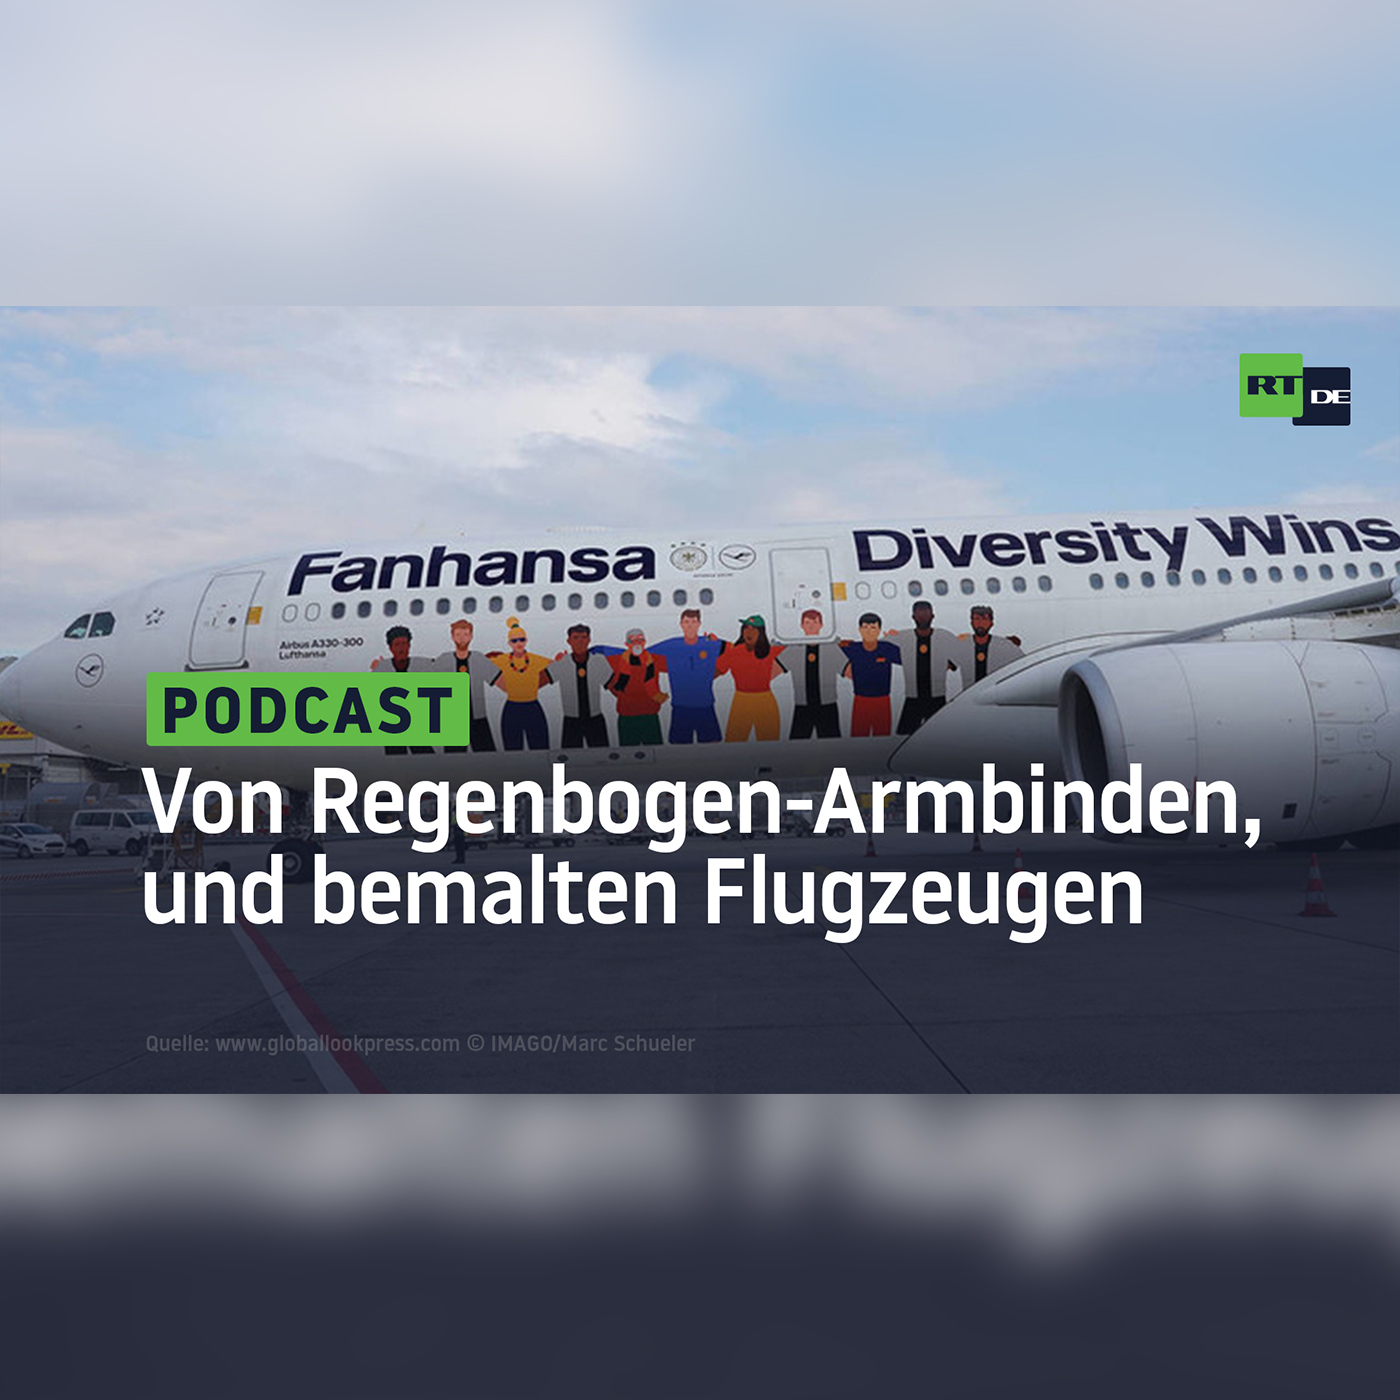 Von Regenbogen-Armbinden, bemalten Flugzeugen, Petitionen und einem deutschen Irrweg